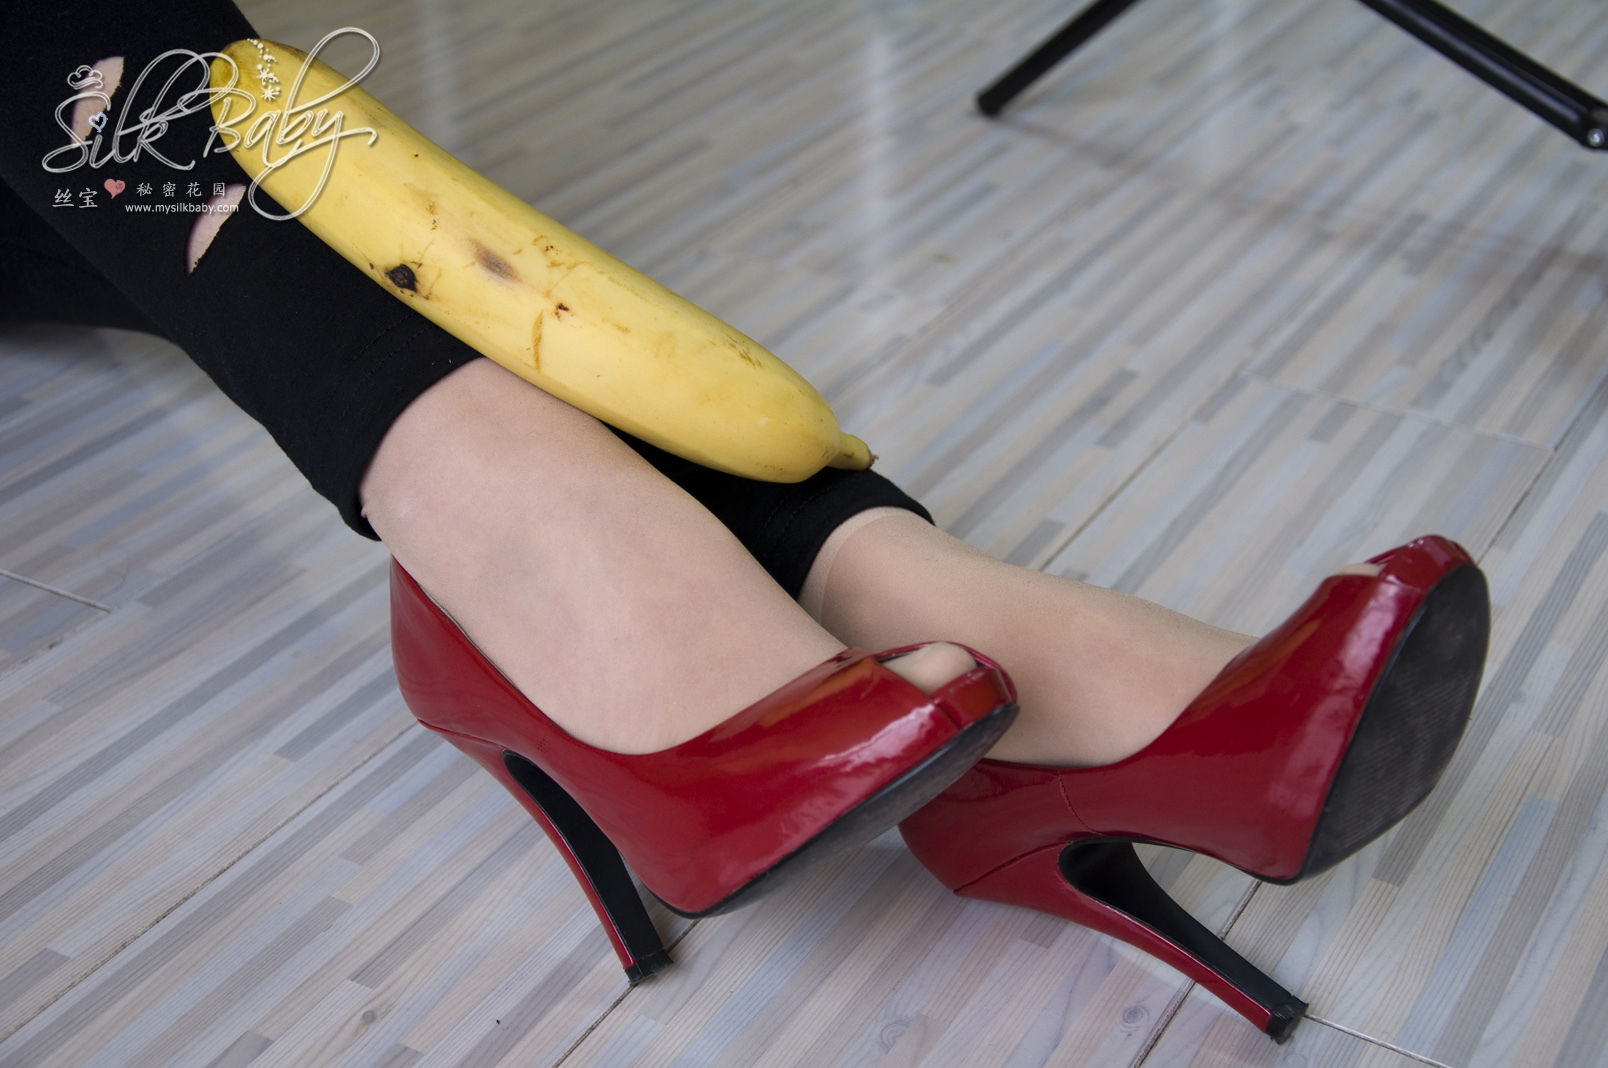 Silk banana